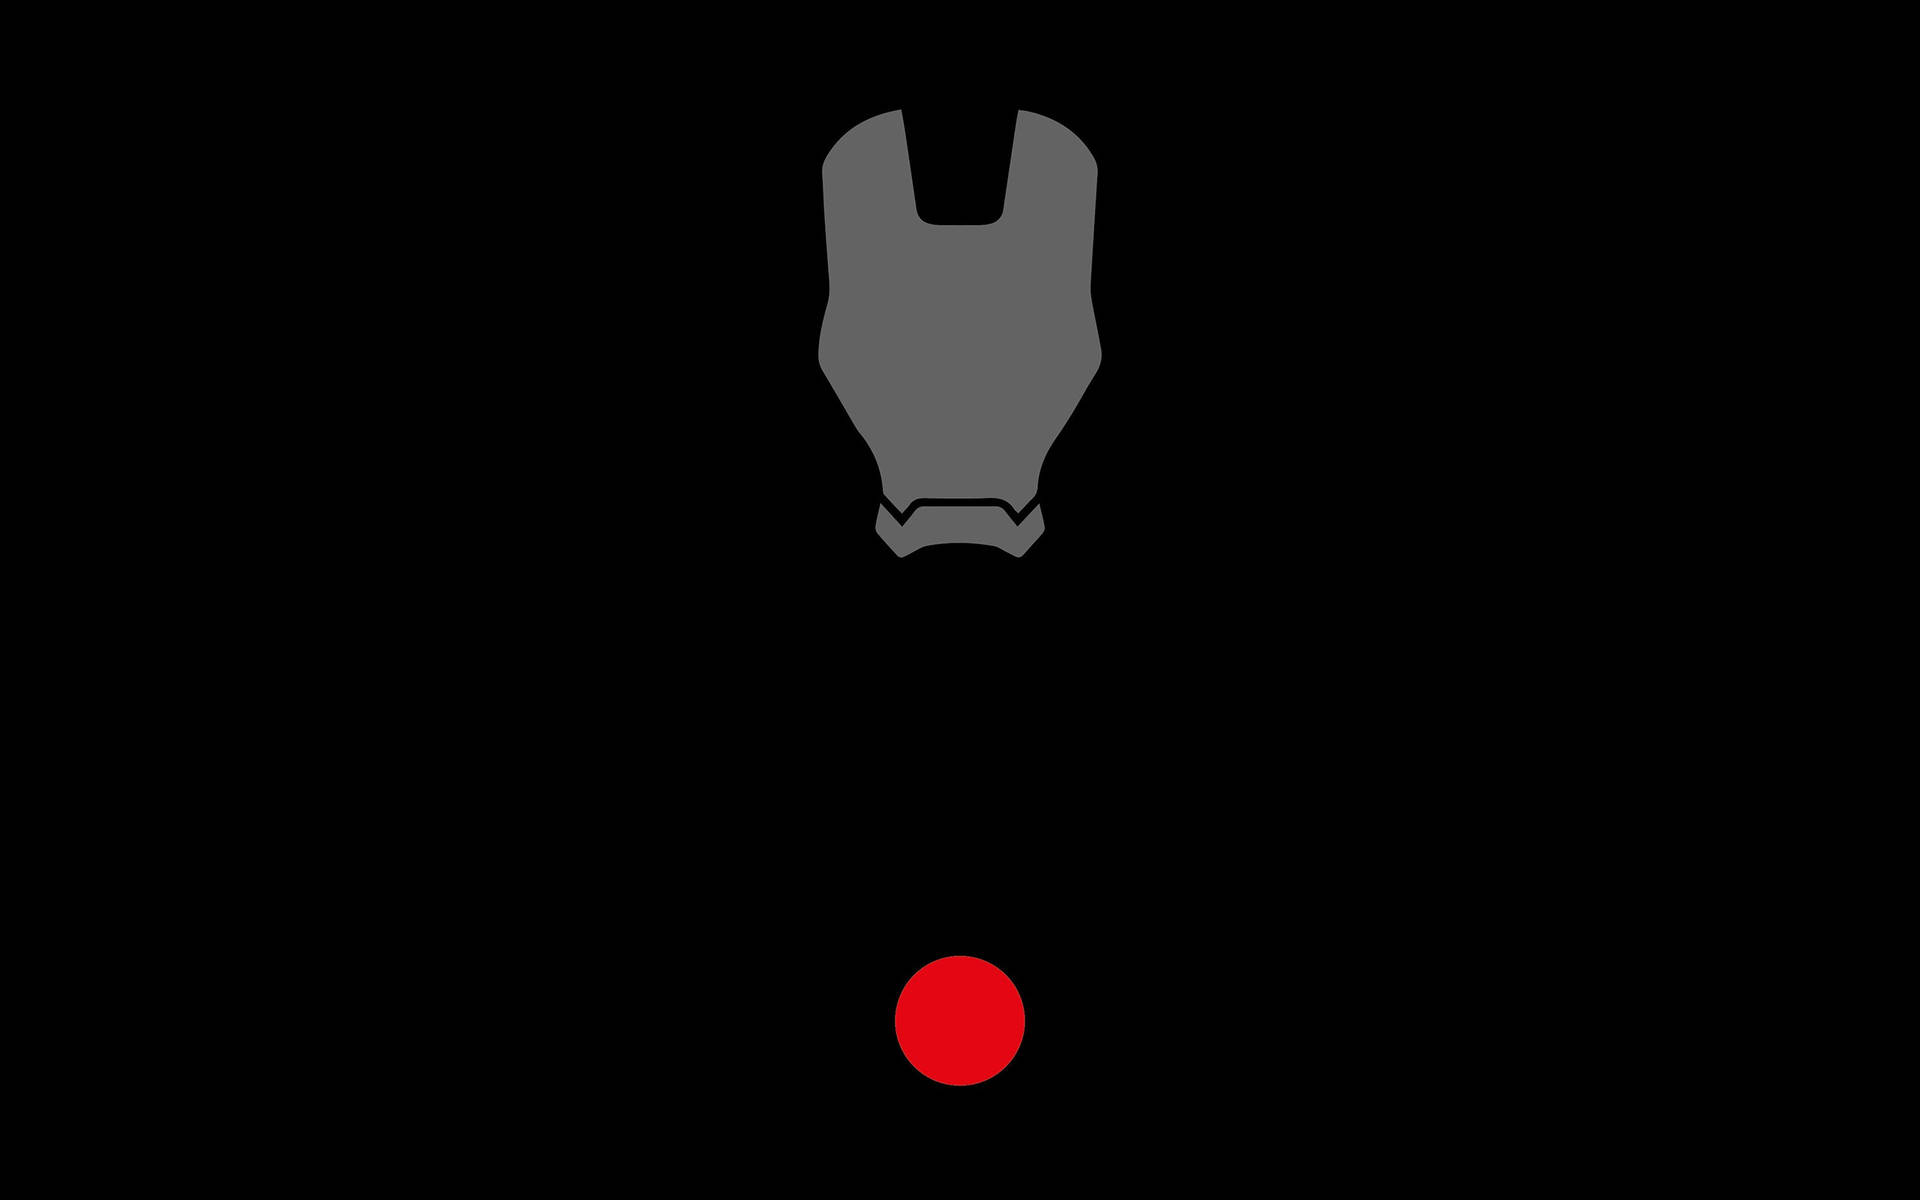 Faceless Iron Man Logo